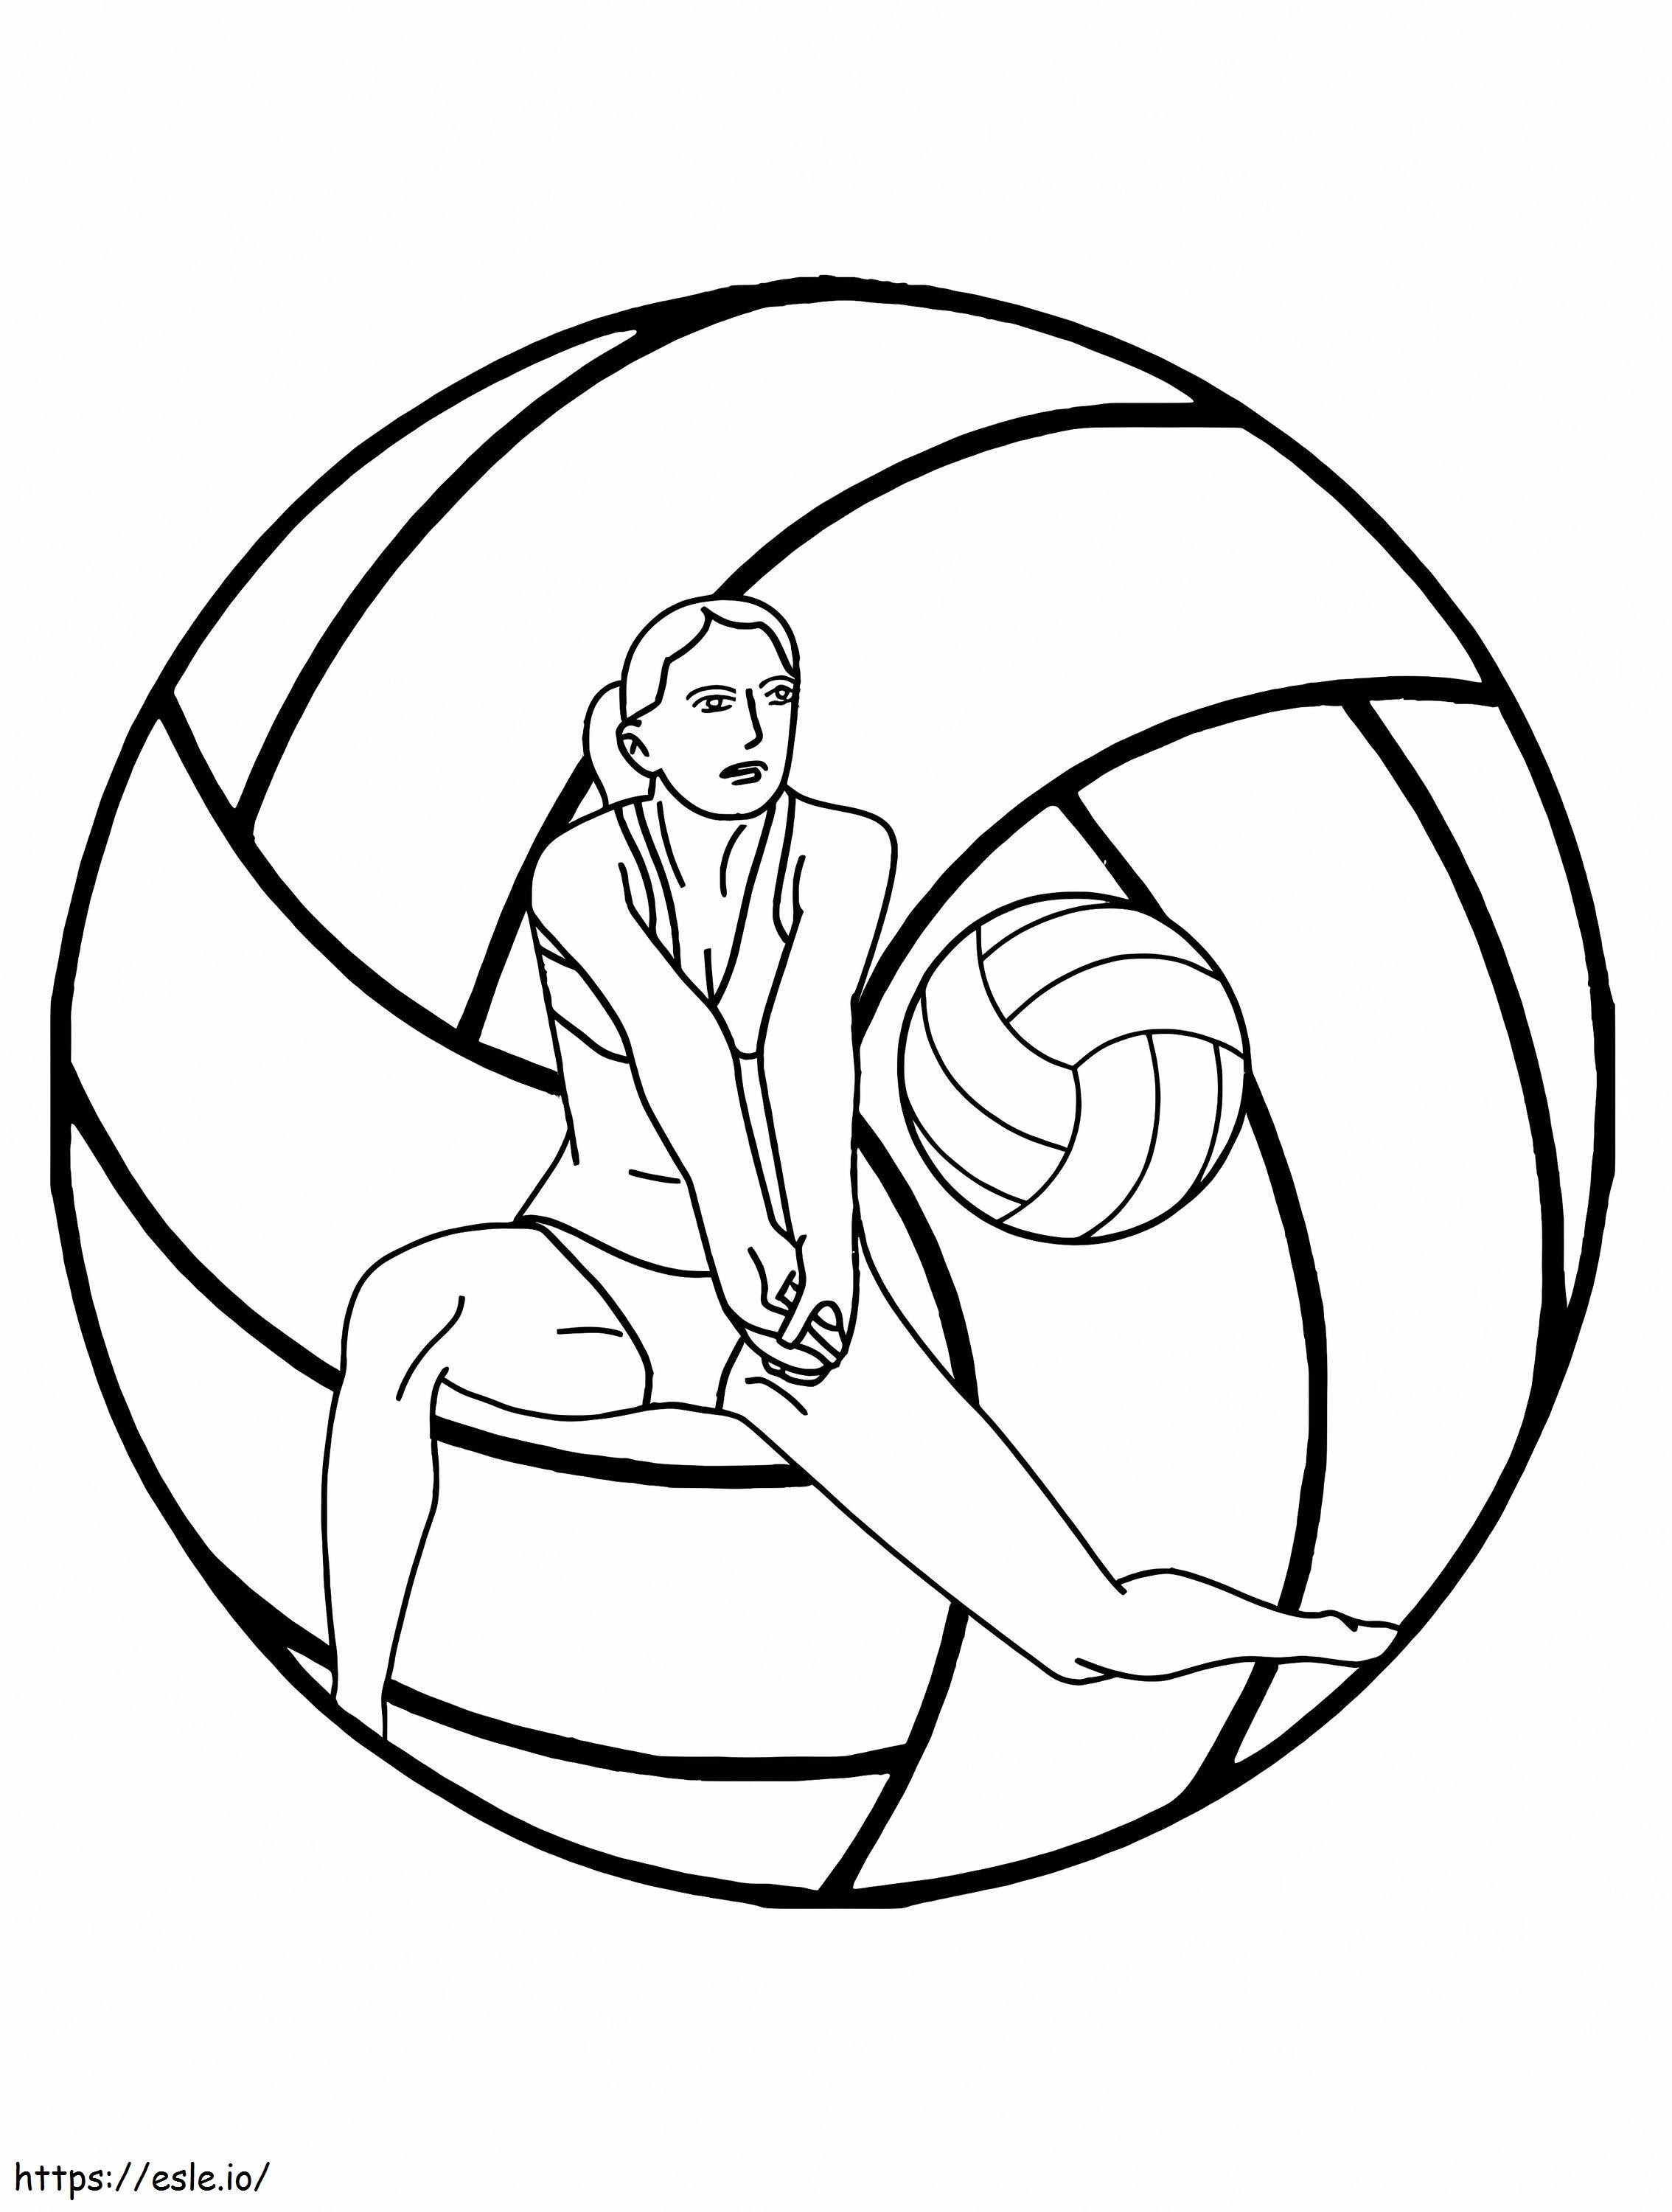 Volleyball-Turnier-Logo ausmalbilder